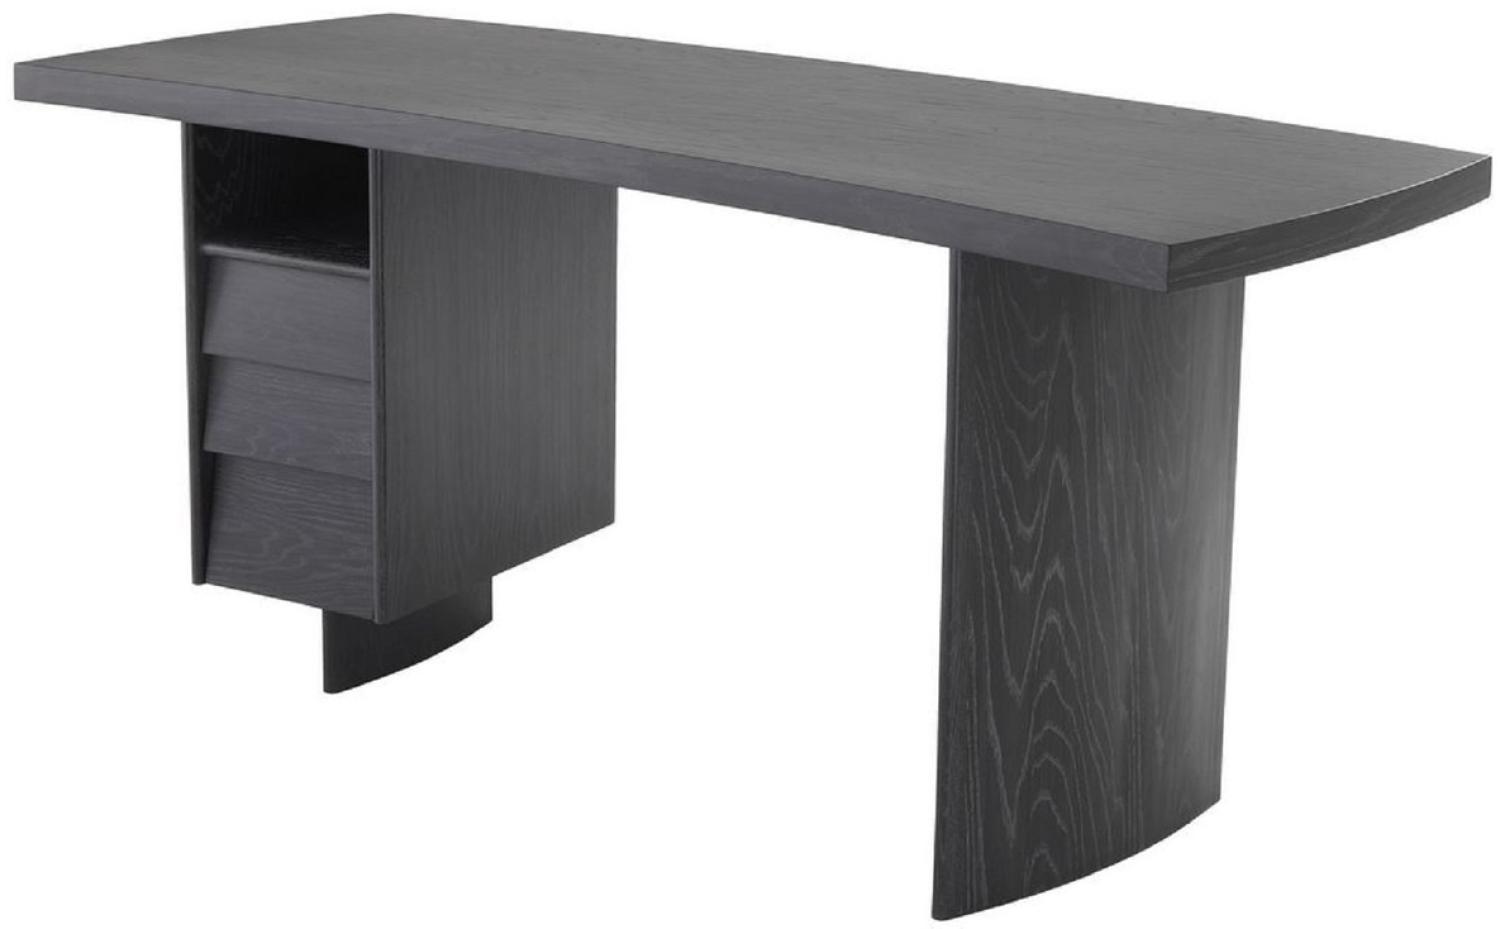 Casa Padrino Luxus Massivholz Schreibtisch mit gebogener Tischplatte Anthrazitgrau 170 x 70 x H. 78,5 cm - Bürotisch - Computertisch - Luxus Büro Möbel Bild 1